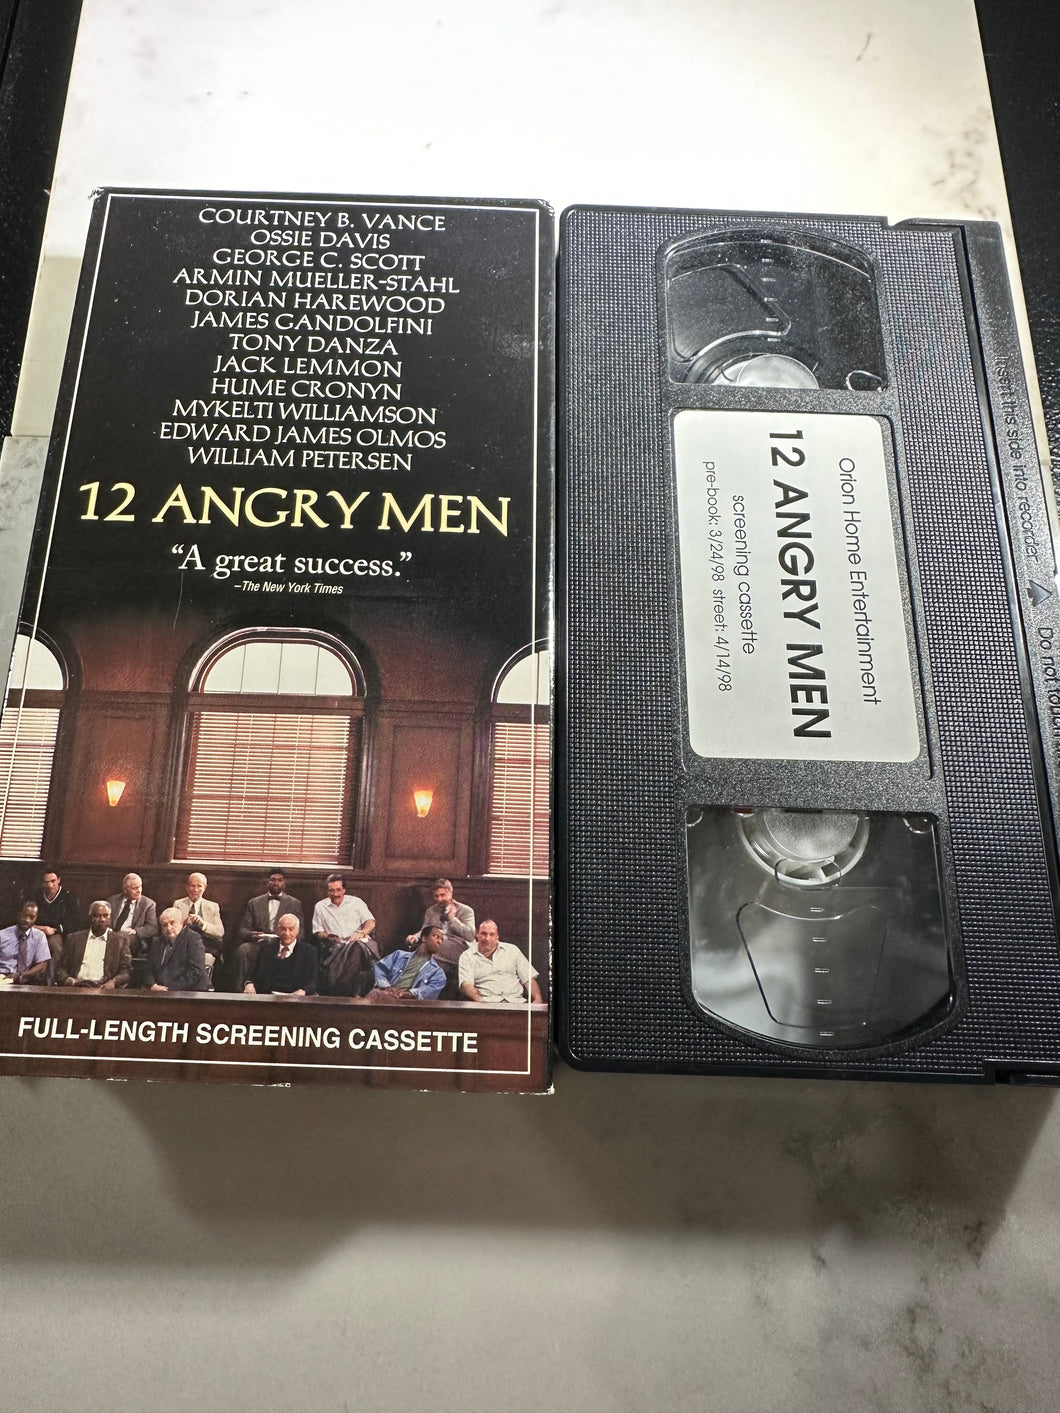 12 ANGRY MEN FULL LENGTH SCREENING CASSETTE PREOWNED VHS